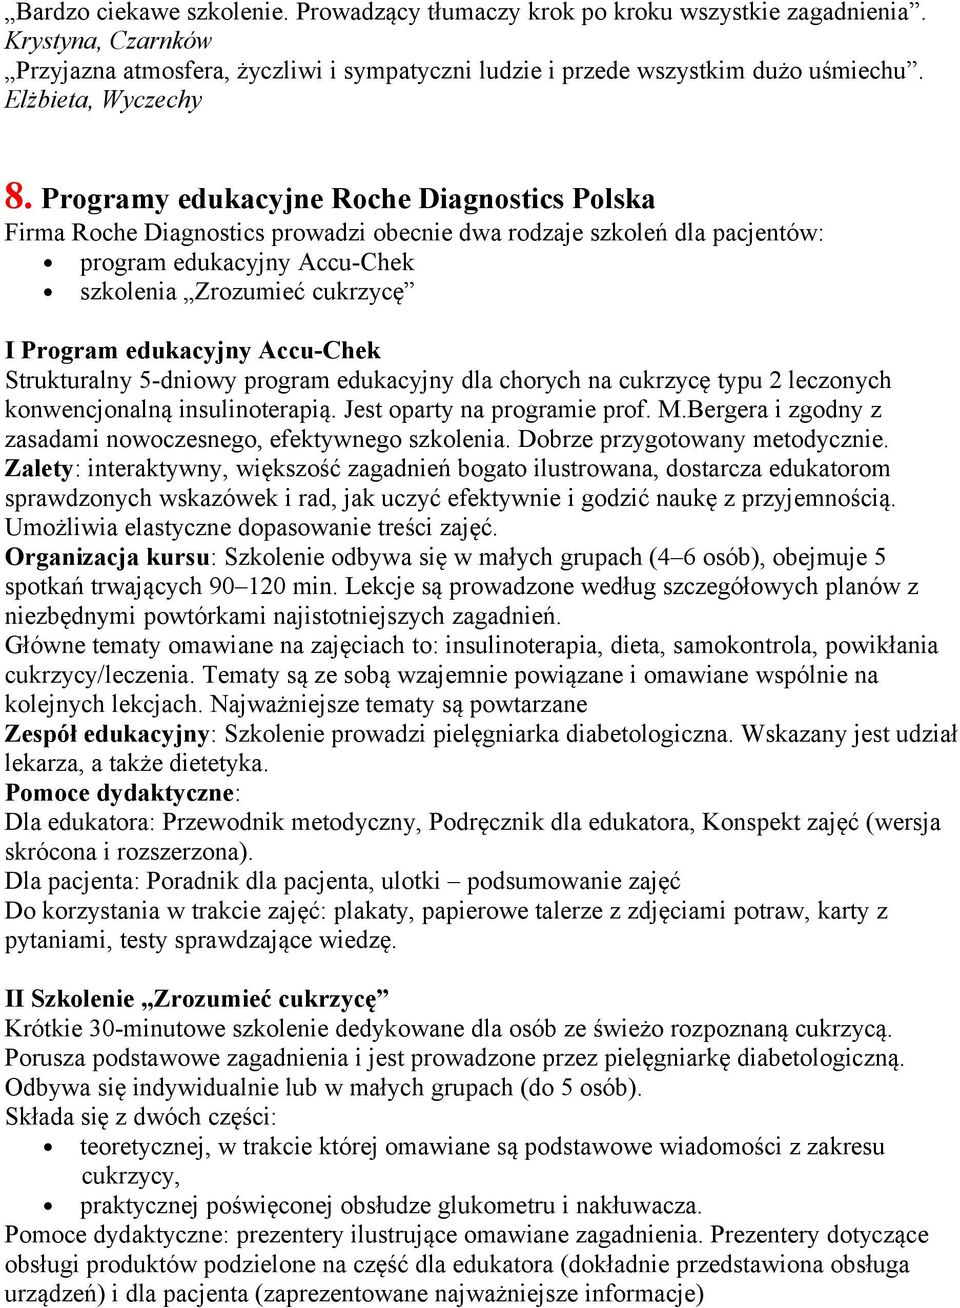 Programy edukacyjne Roche Diagnostics Polska Firma Roche Diagnostics prowadzi obecnie dwa rodzaje szkoleń dla pacjentów: program edukacyjny Accu-Chek szkolenia Zrozumieć cukrzycę I Program edukacyjny